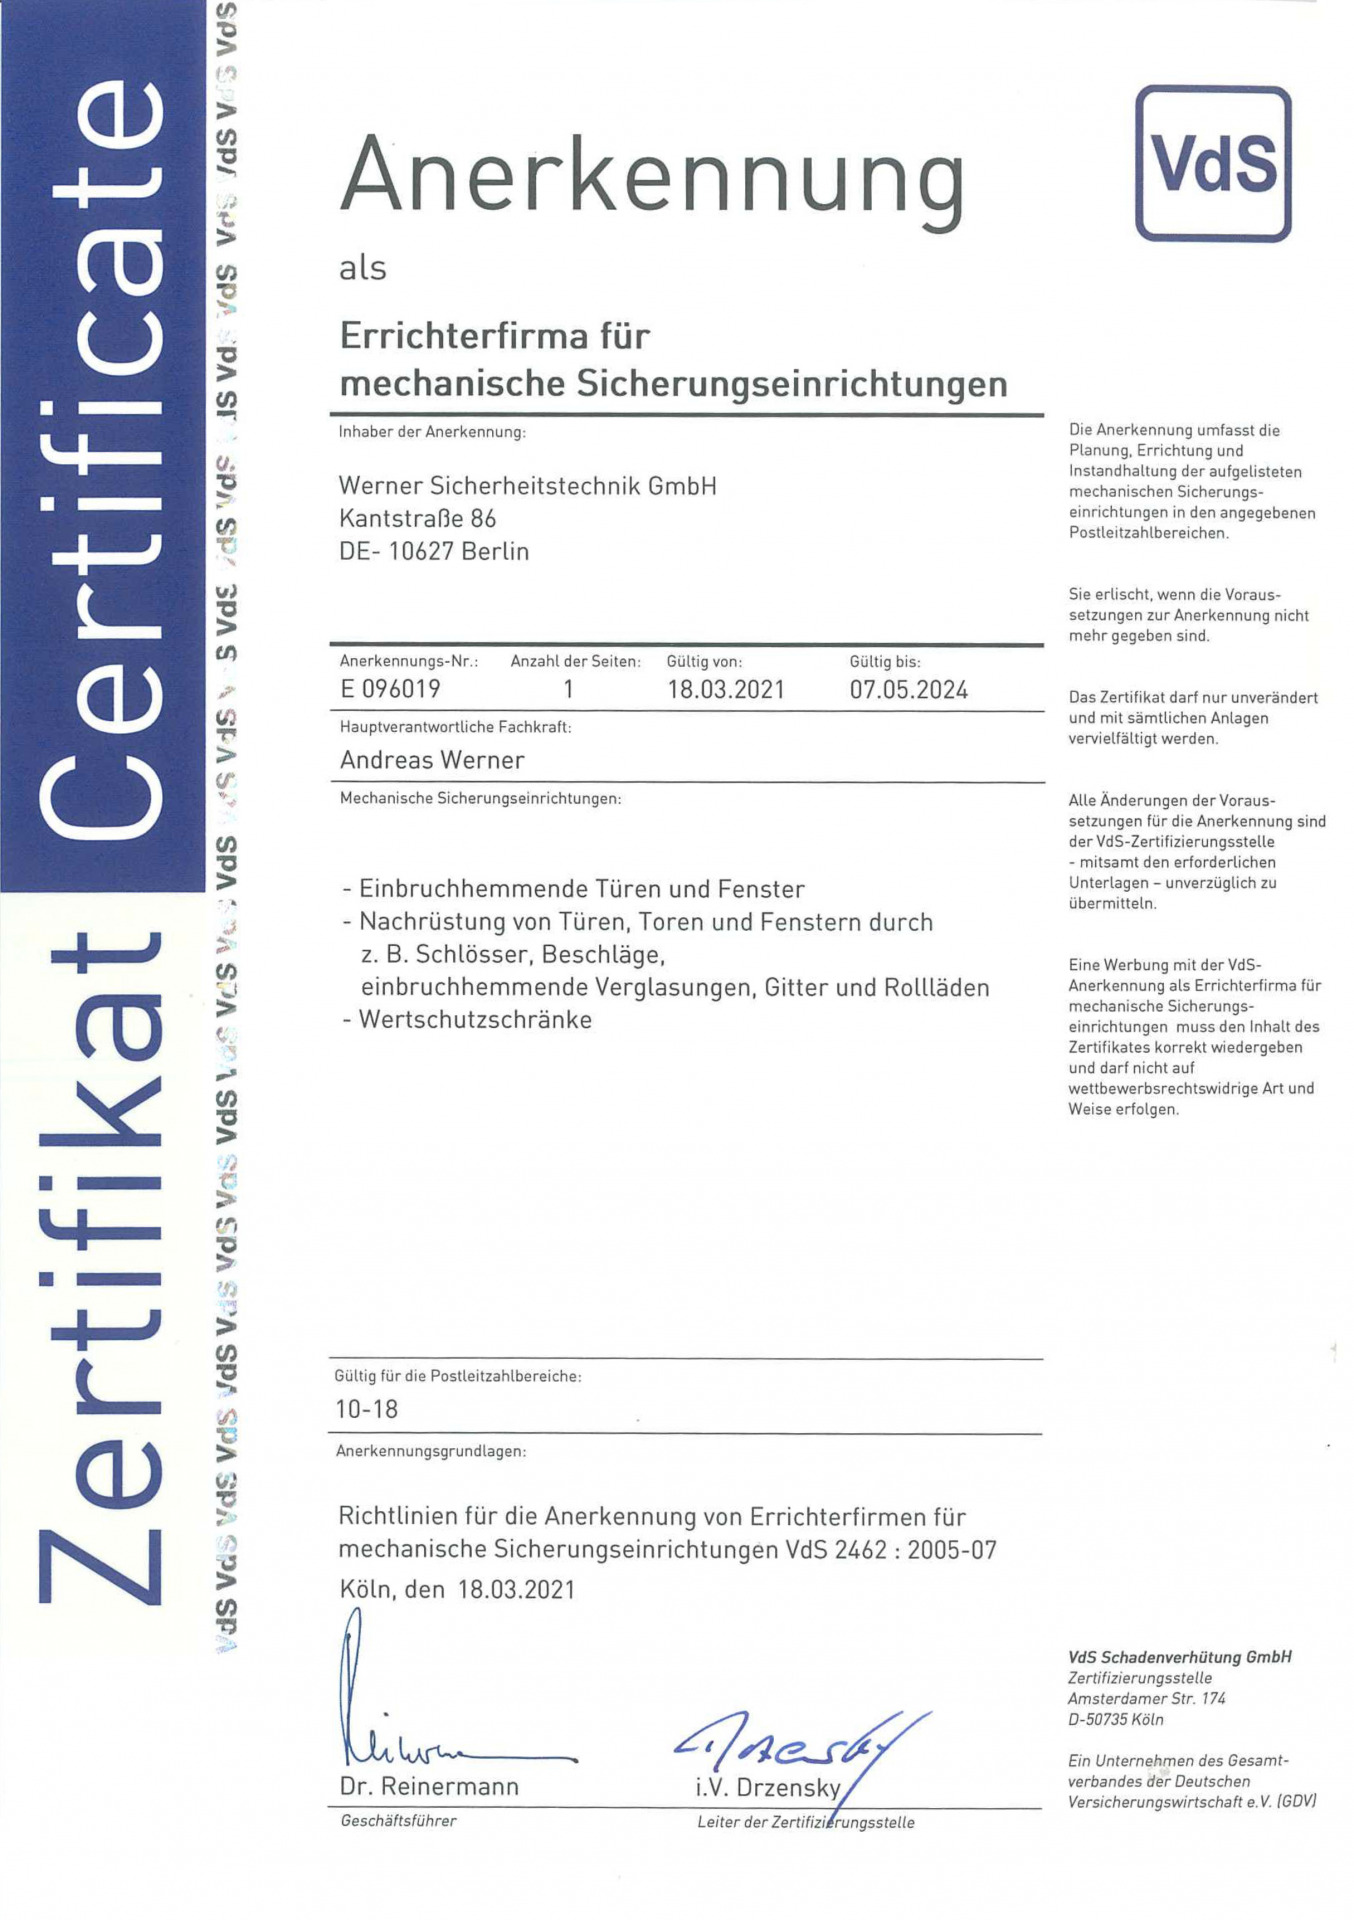 VdS Zertifikat für mechanische Sicherungstechnik